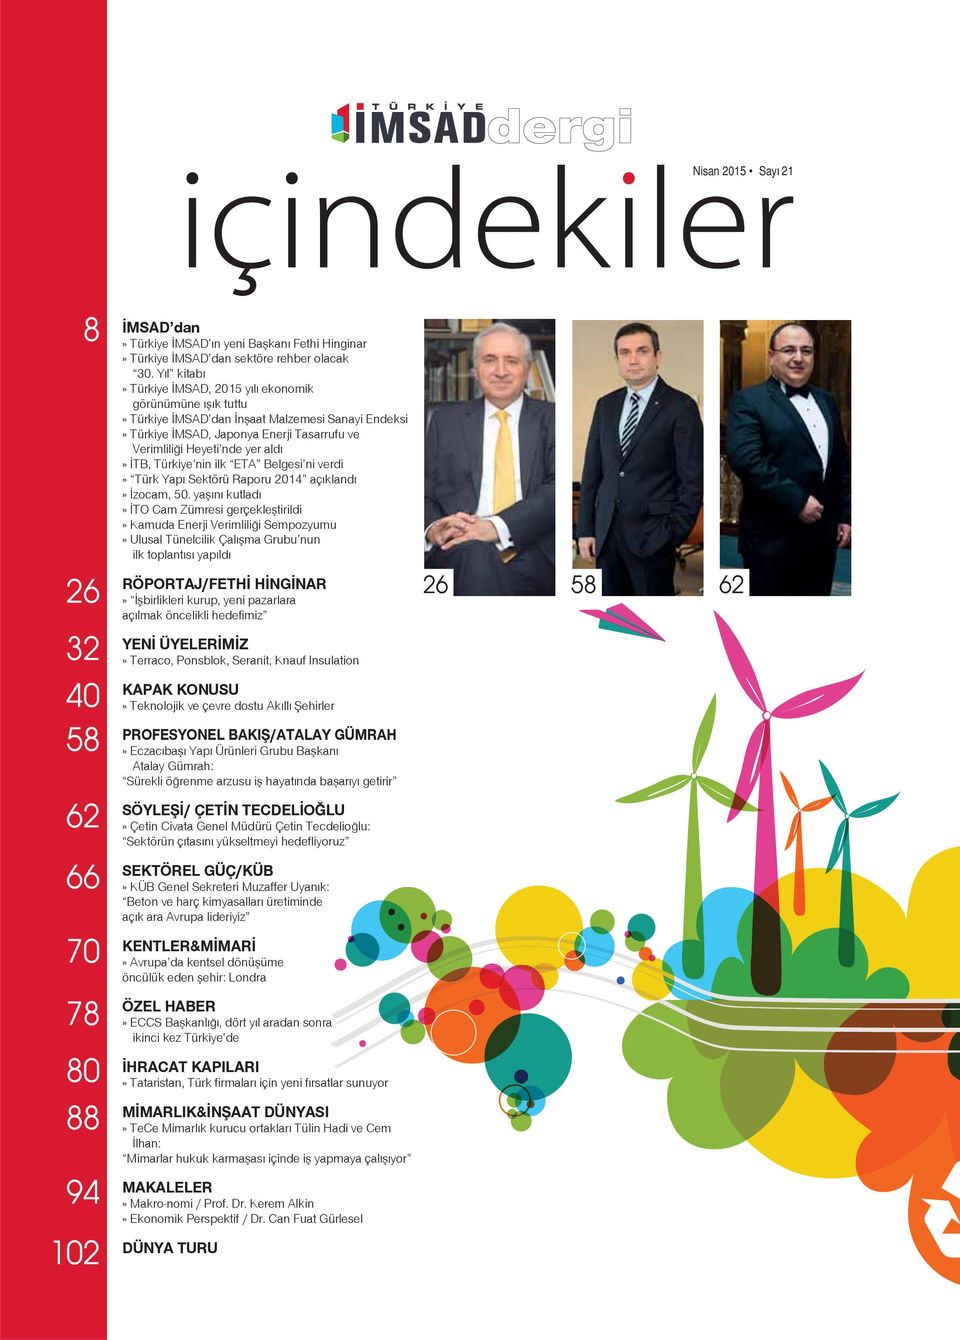 İTB, Türkiye nin ilk ETA Belgesi ni verdi» Türk Yapı Sektörü Raporu 2014 açıklandı» İzocam, 50.